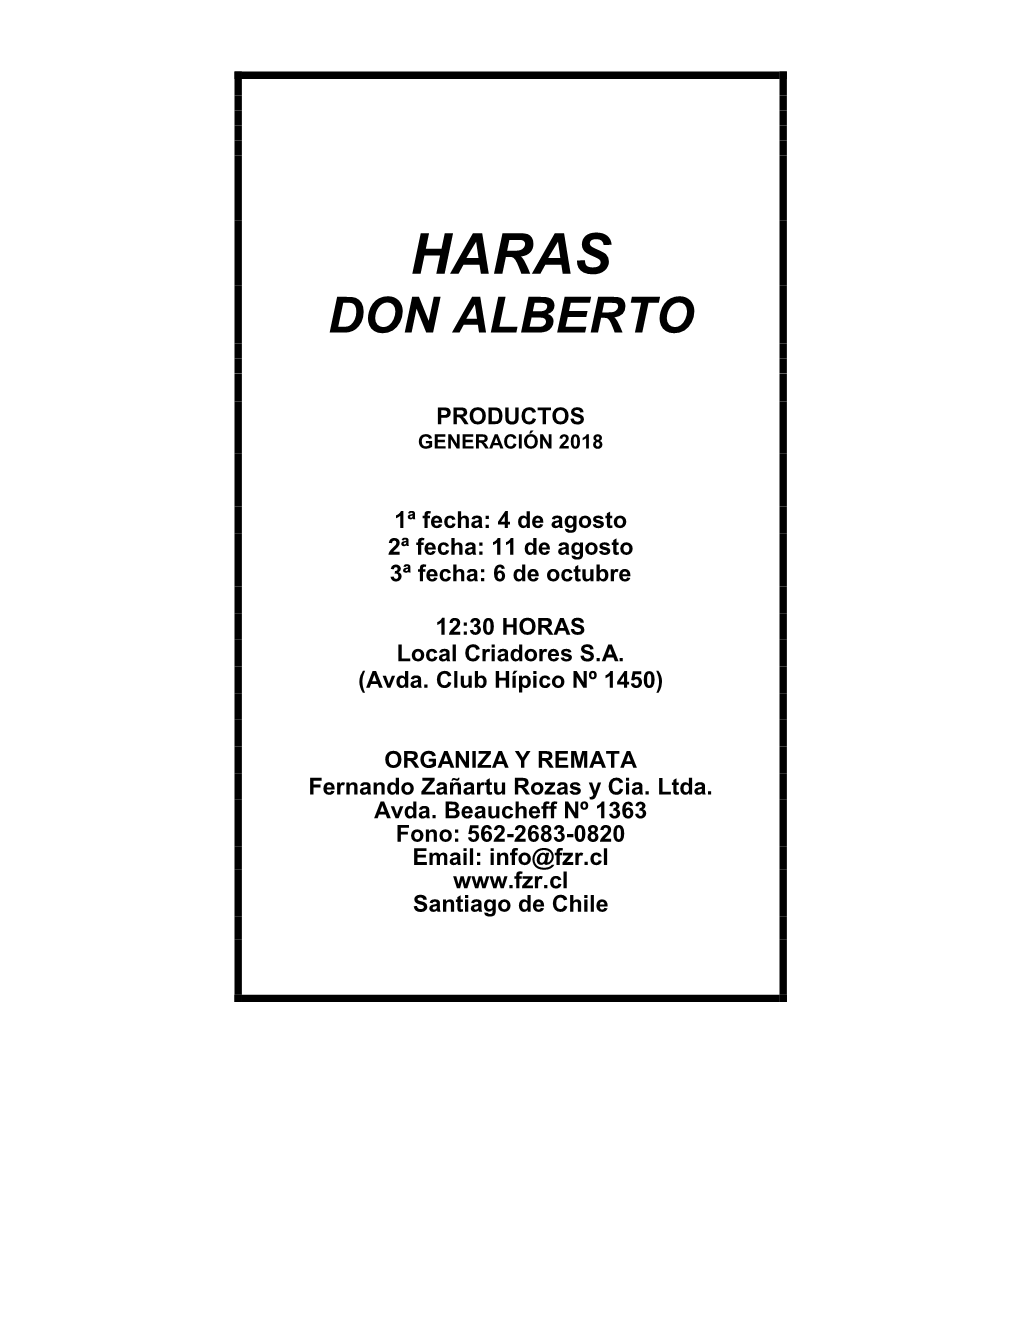 Haras Don Alberto